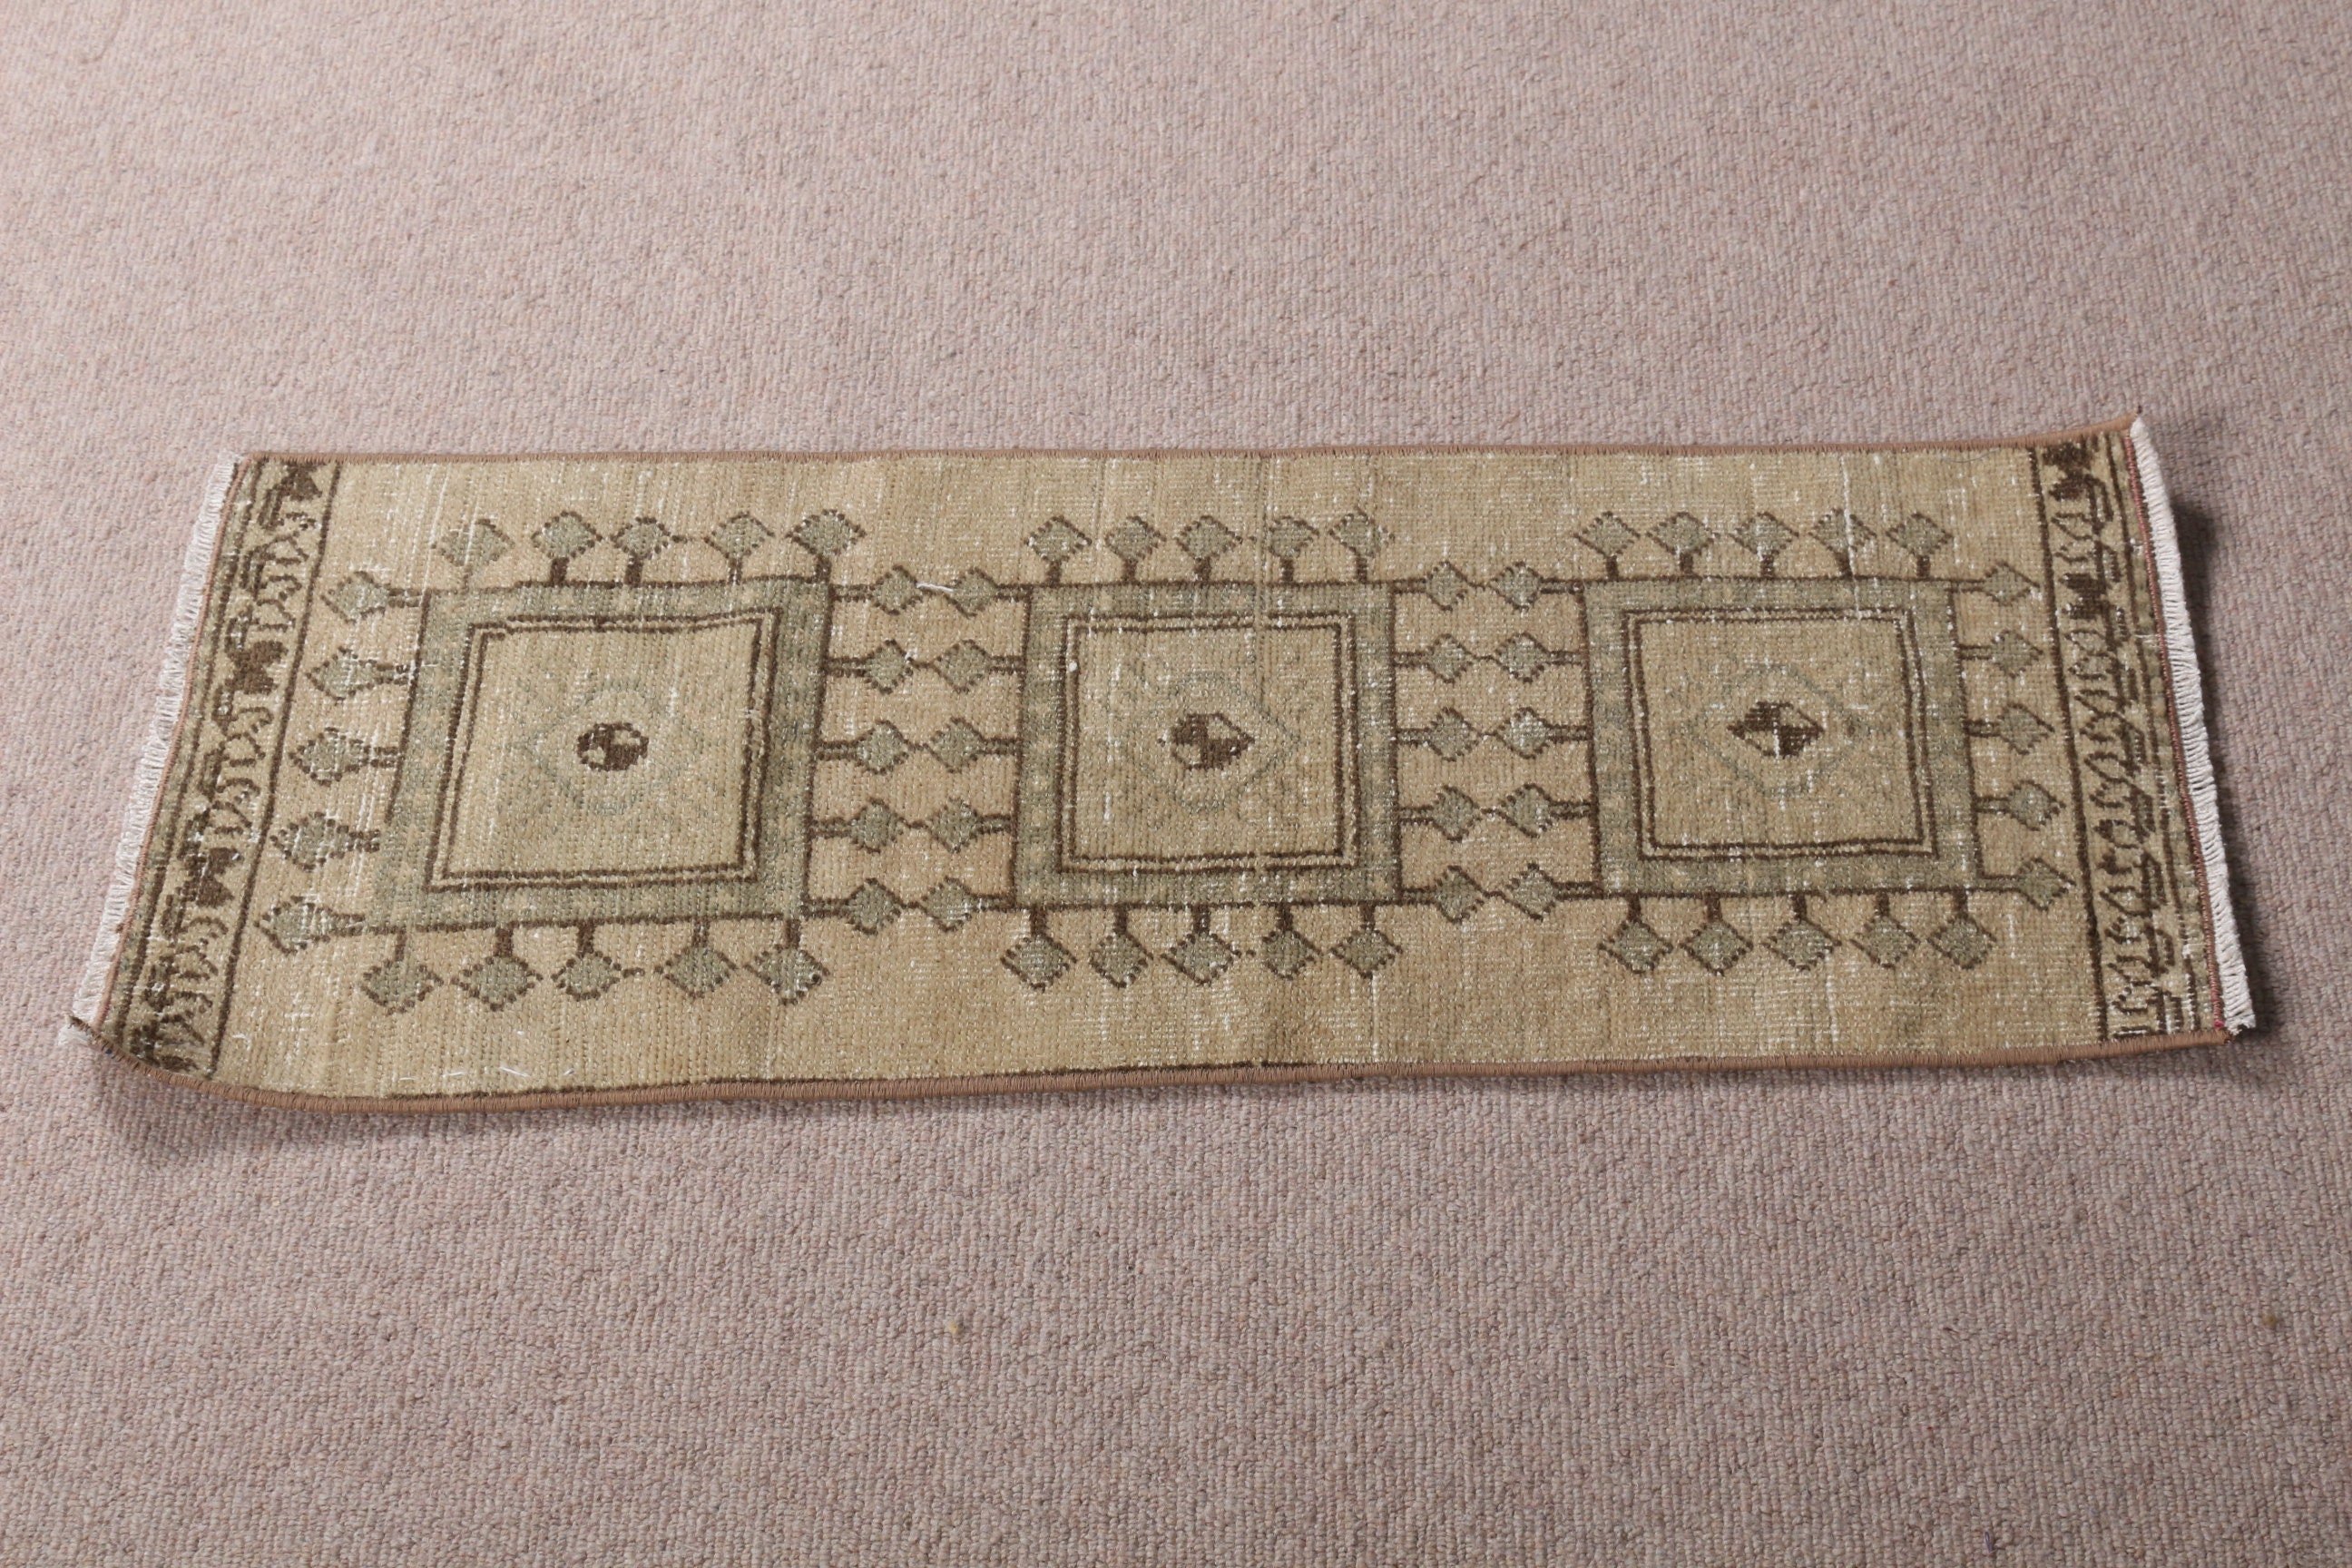 Turkish Rug, 1.2x3.1 ft Small Rugs, Wool Rug, Door Mat Rug, Oriental Rug, Kitchen Rug, Vintage Rug, Distressed Rugs, Brown Home Decor Rugs